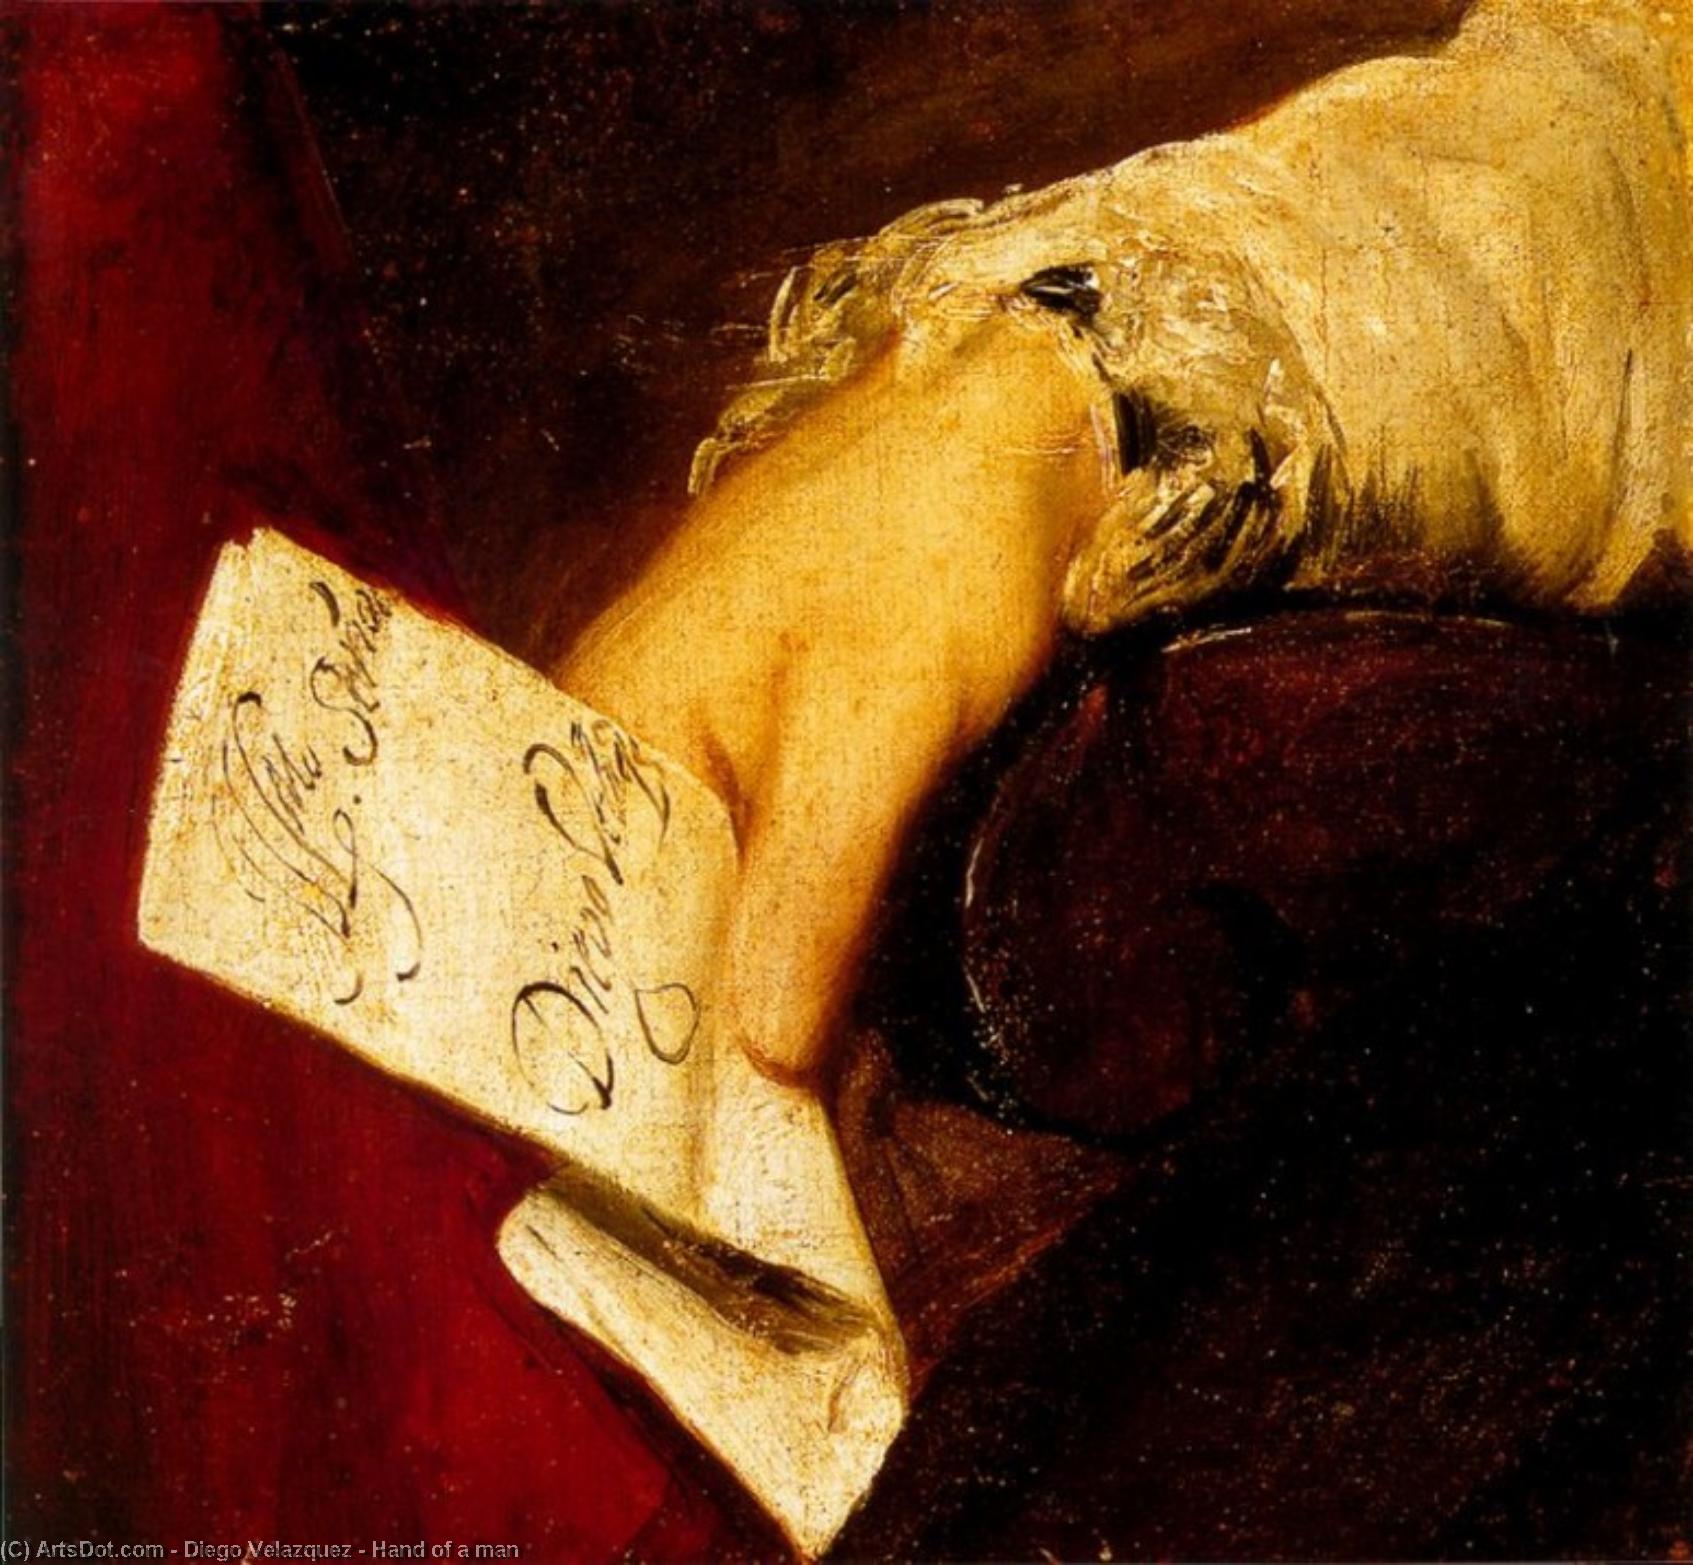 WikiOO.org - Enciclopédia das Belas Artes - Pintura, Arte por Diego Velazquez - Hand of a man